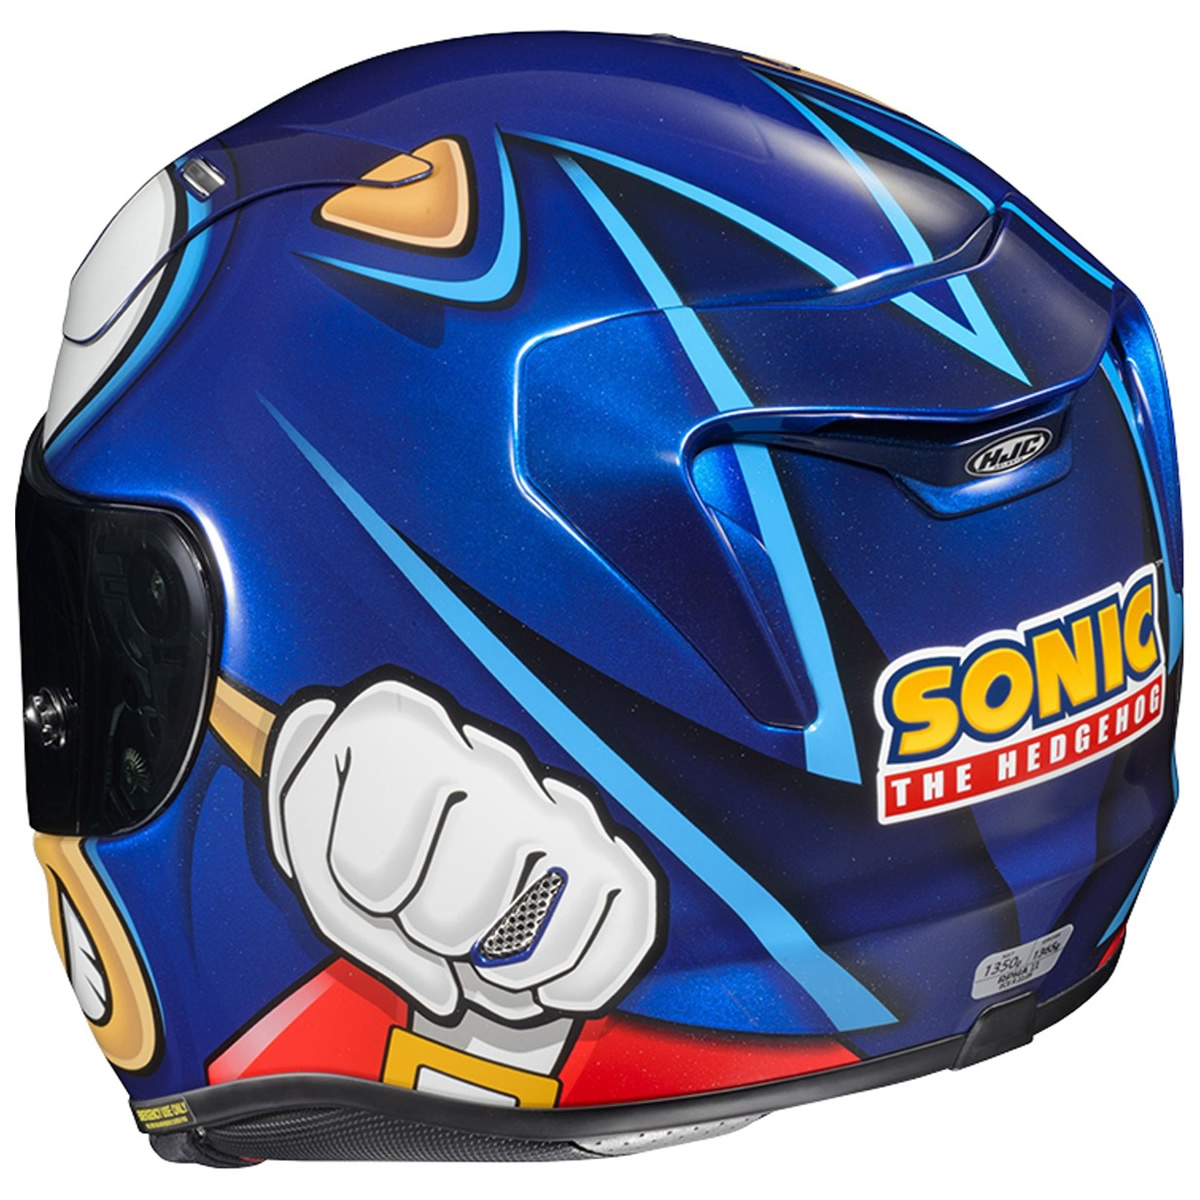 HJC Helm RPHA 11 Sonic - Sega